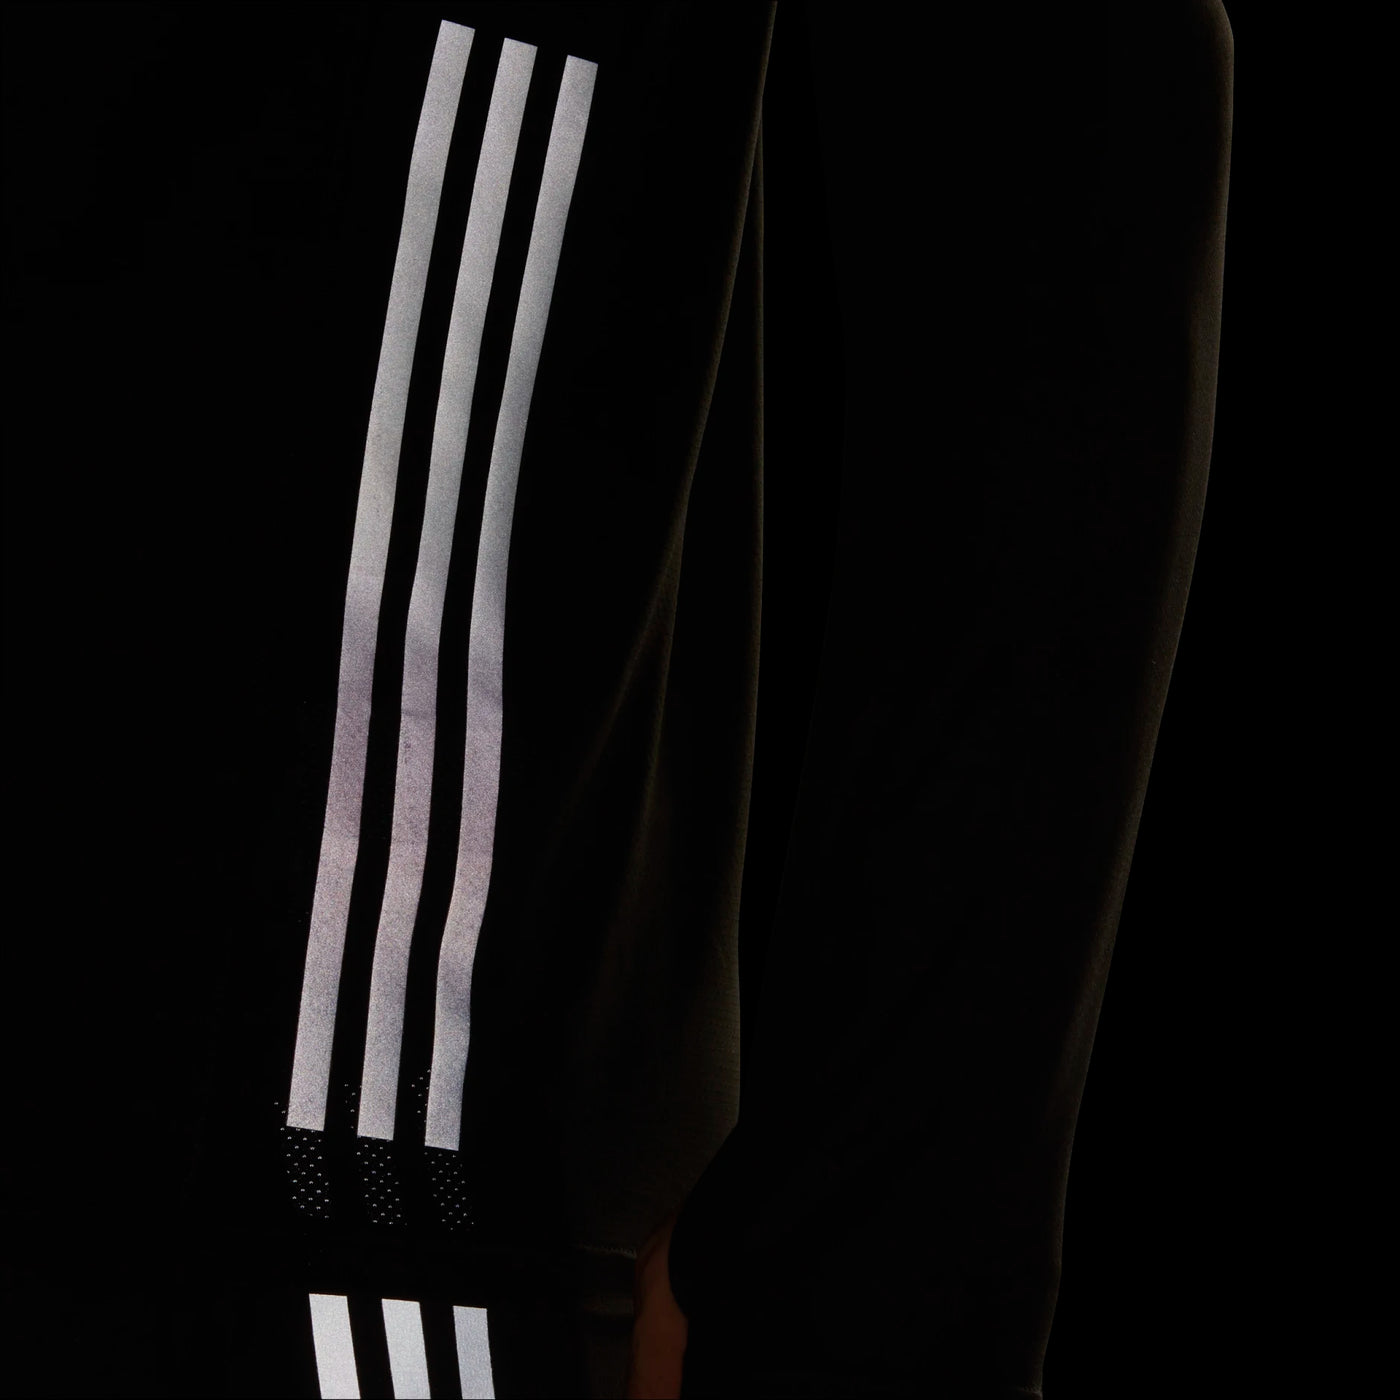 Adidas Run Icons 3 Stripes Long Sleeve Tshirt - Black